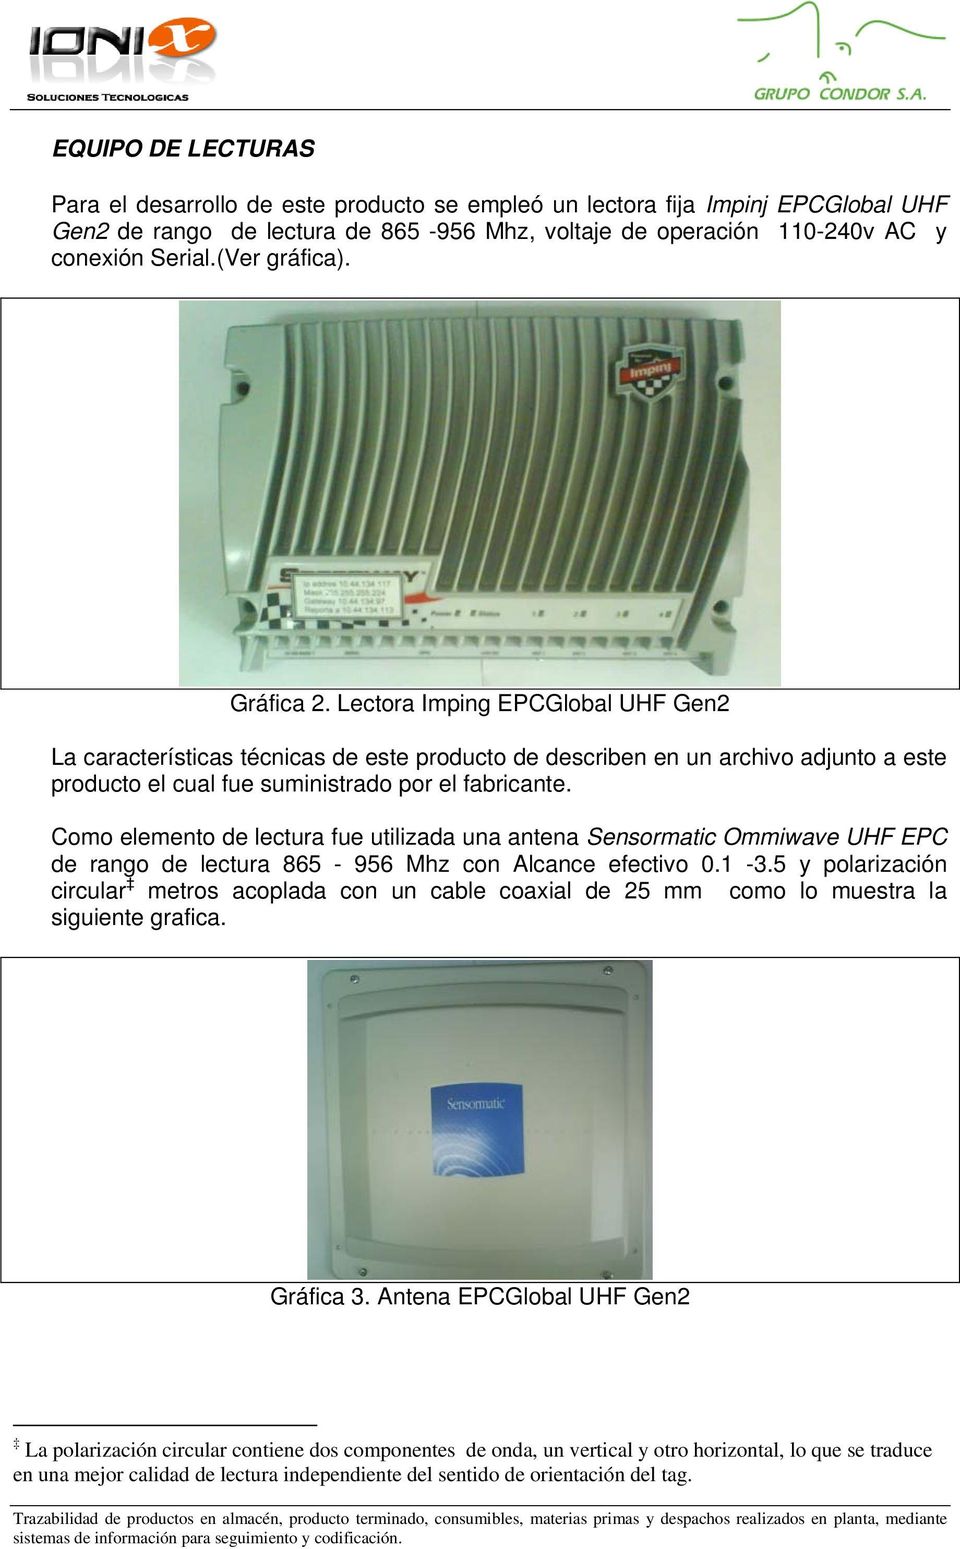 Como elemento de lectura fue utilizada una antena Sensormatic Ommiwave UHF EPC de rango de lectura 865-956 Mhz con Alcance efectivo 0.1-3.